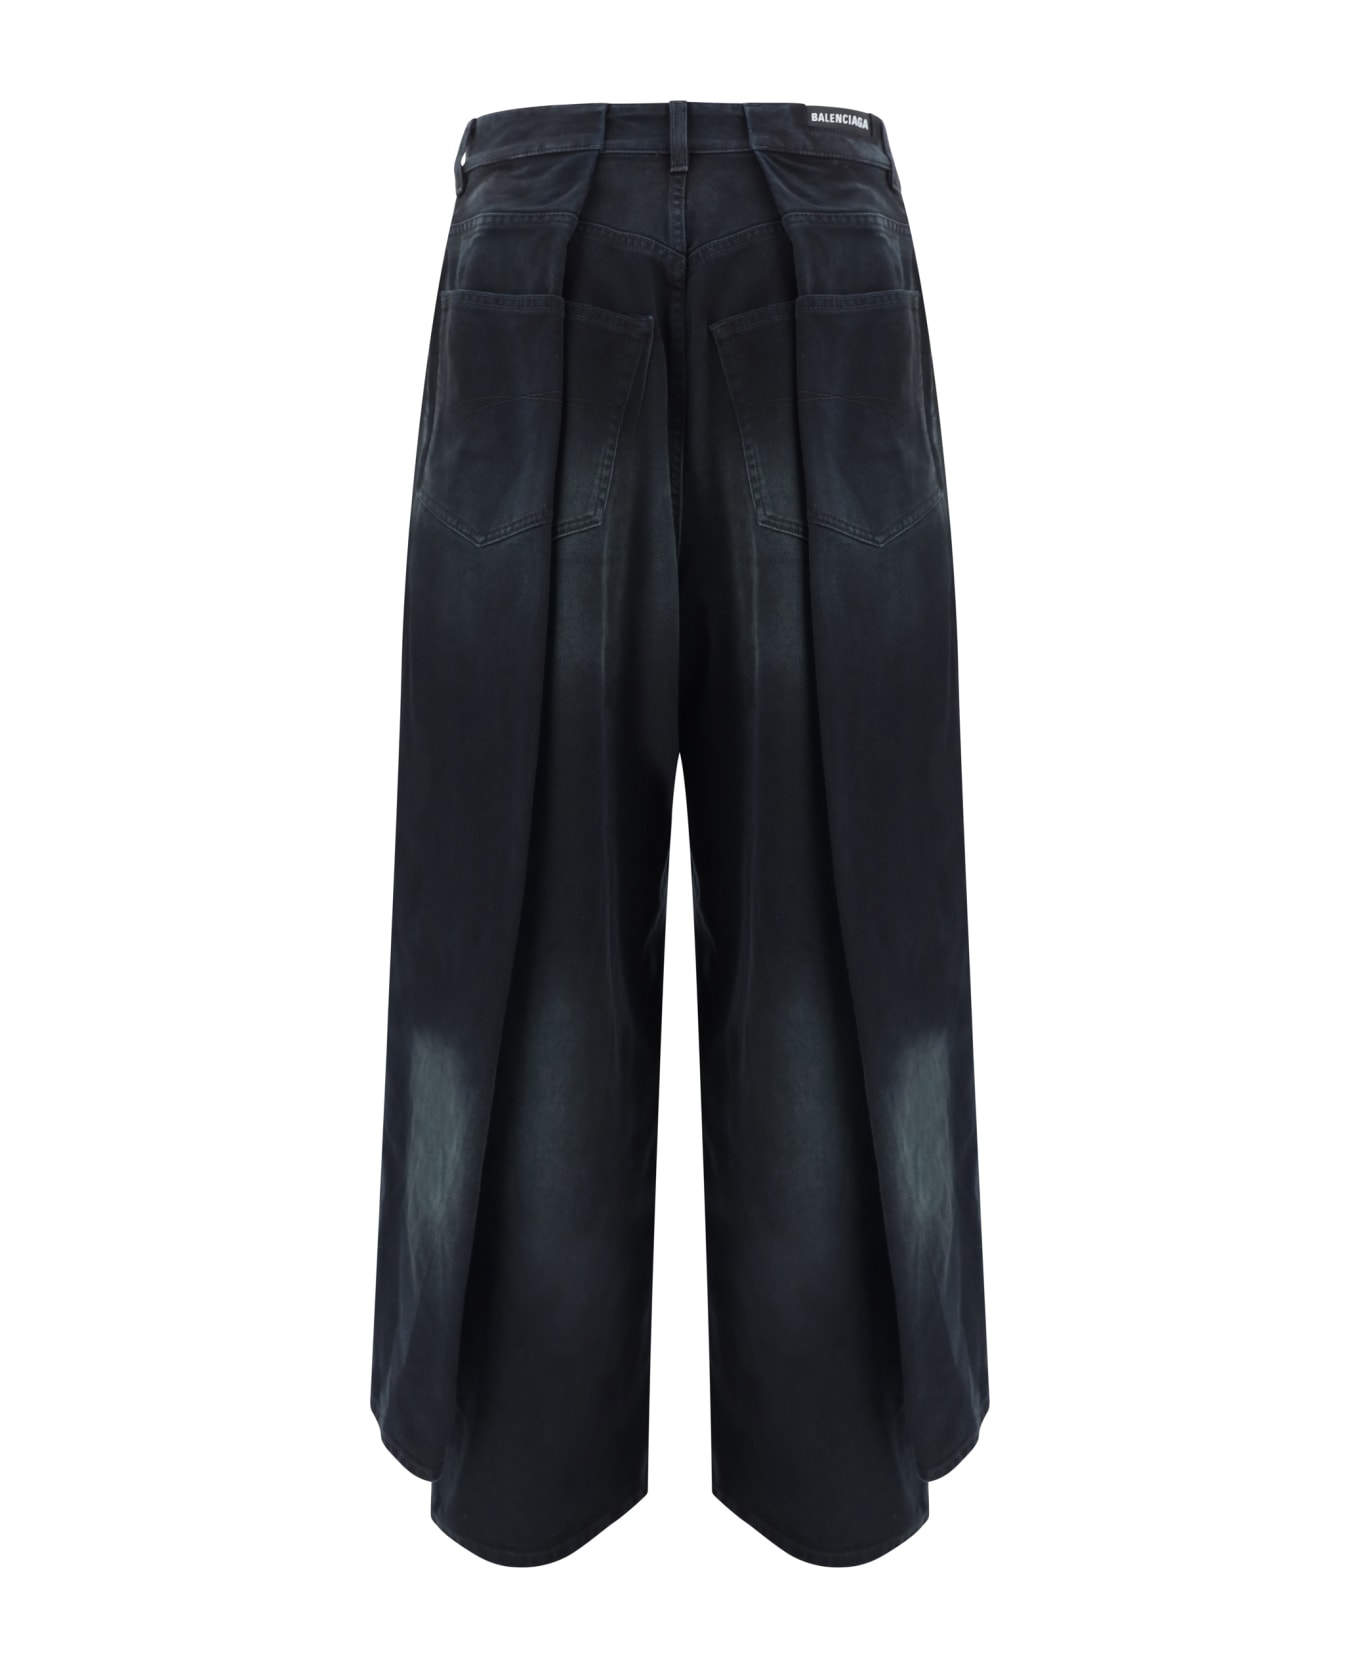 Balenciaga Jeans - Sunbleached Black